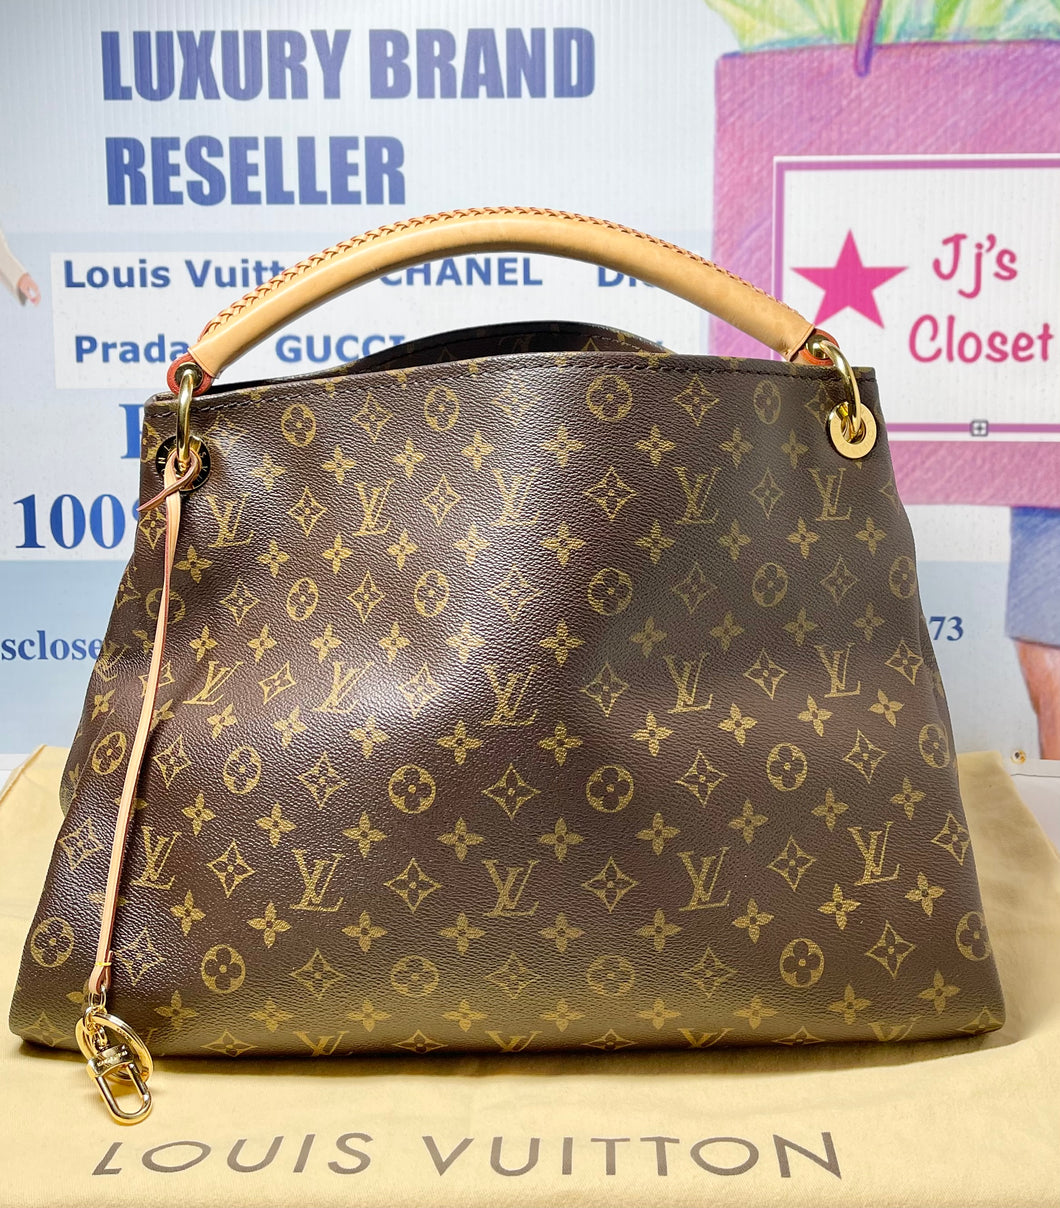 Louis Vuitton Pre-owned, Louis Vuitton Handbags